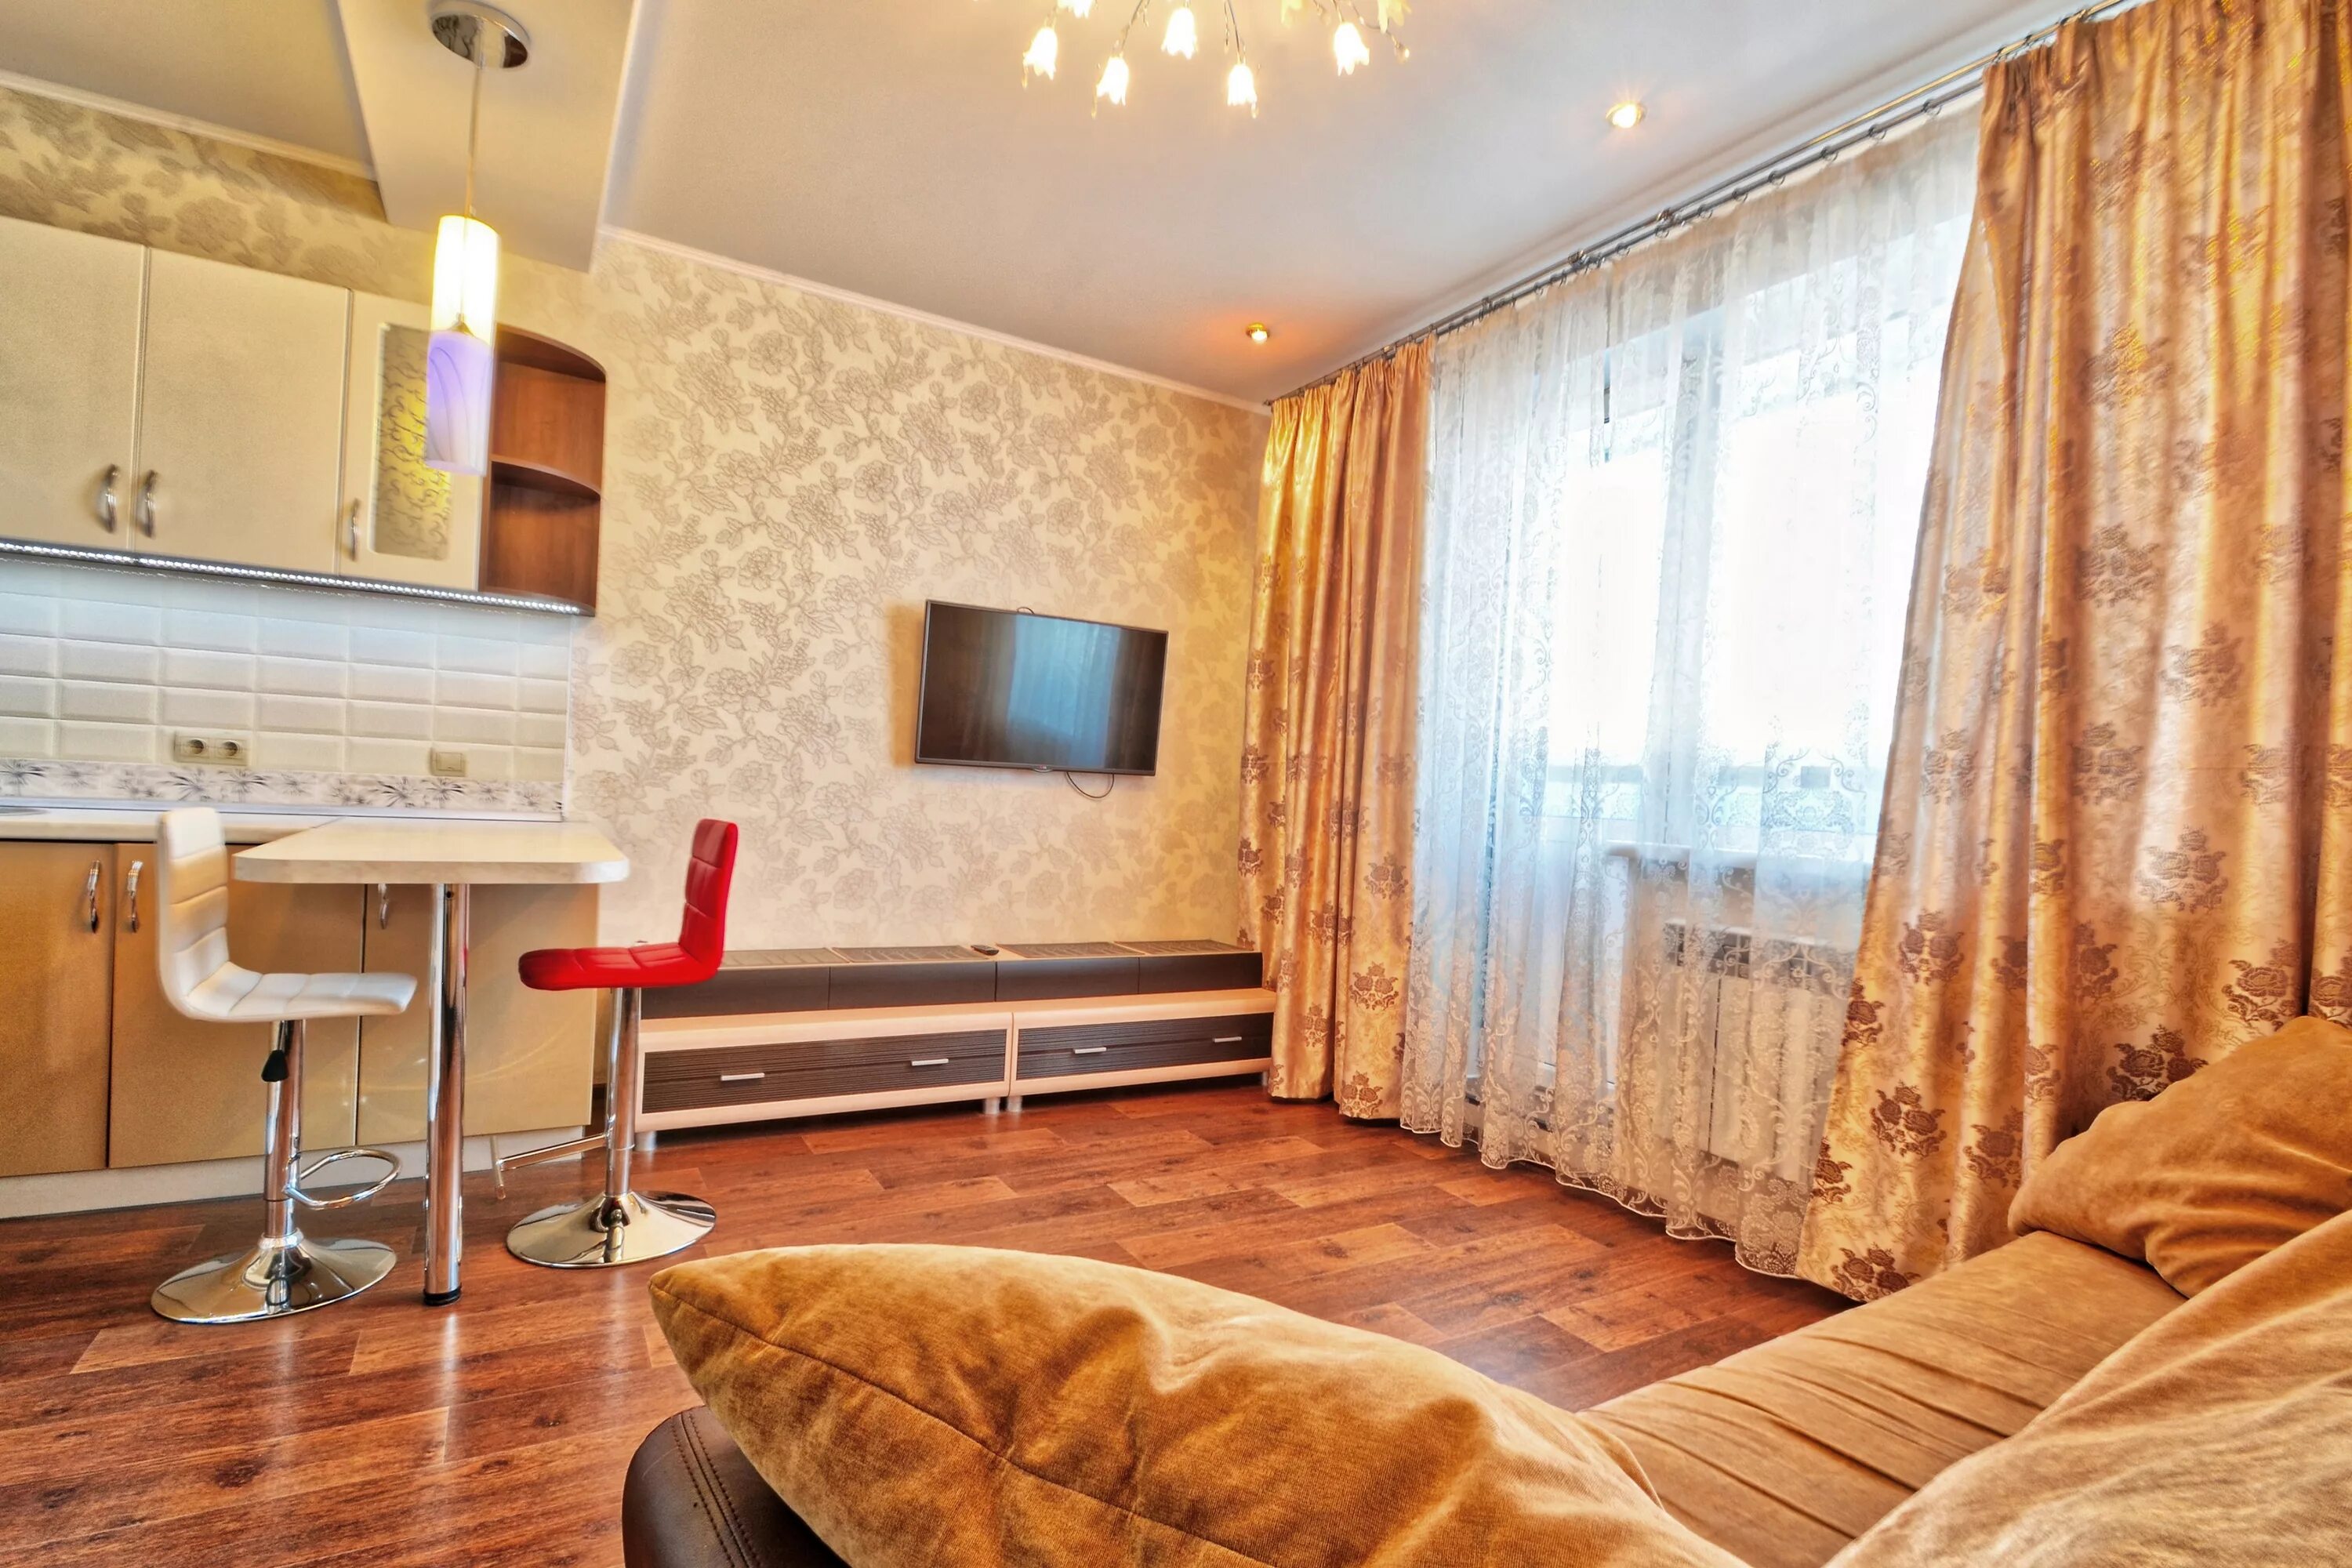 Однокомнатная квартира. Квартиры в Новосибирске. Съемная квартира. Однокомнатная квартира дешевая.